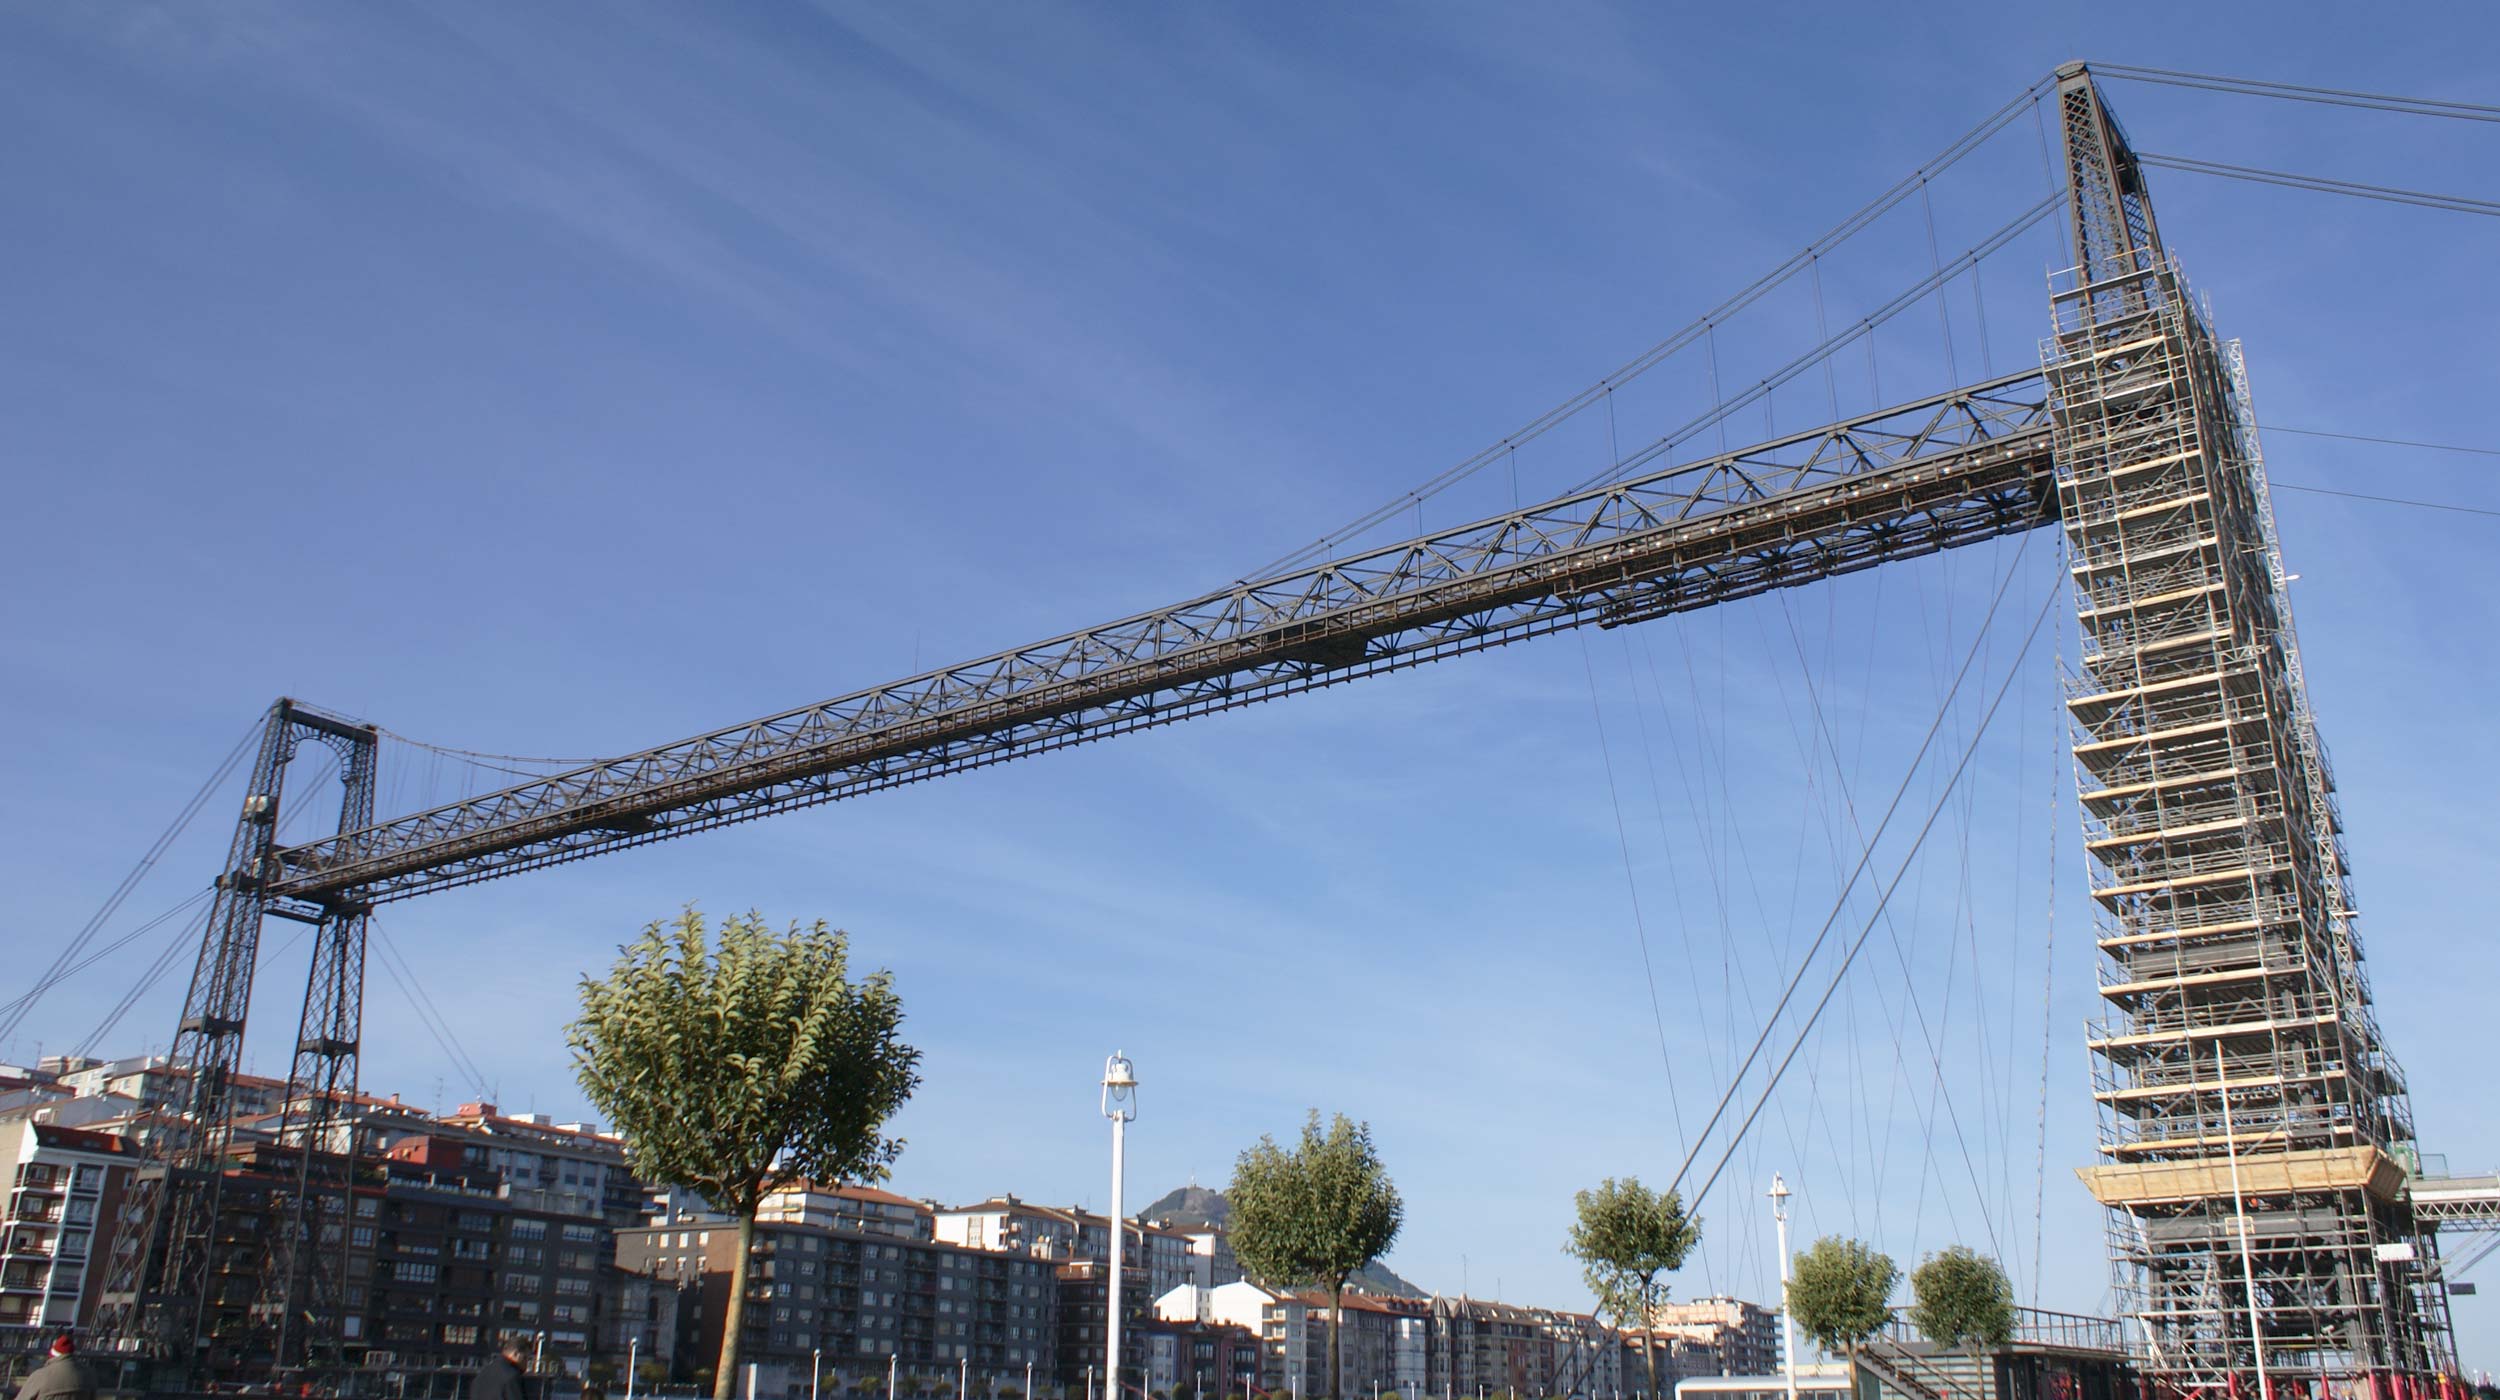 Declarado patrimônio da humanidade pela Unesco em 2006, a Ponte Suspensa ou Ponte Vizcaya simboliza a Revolução Industrial do final do século XIX.